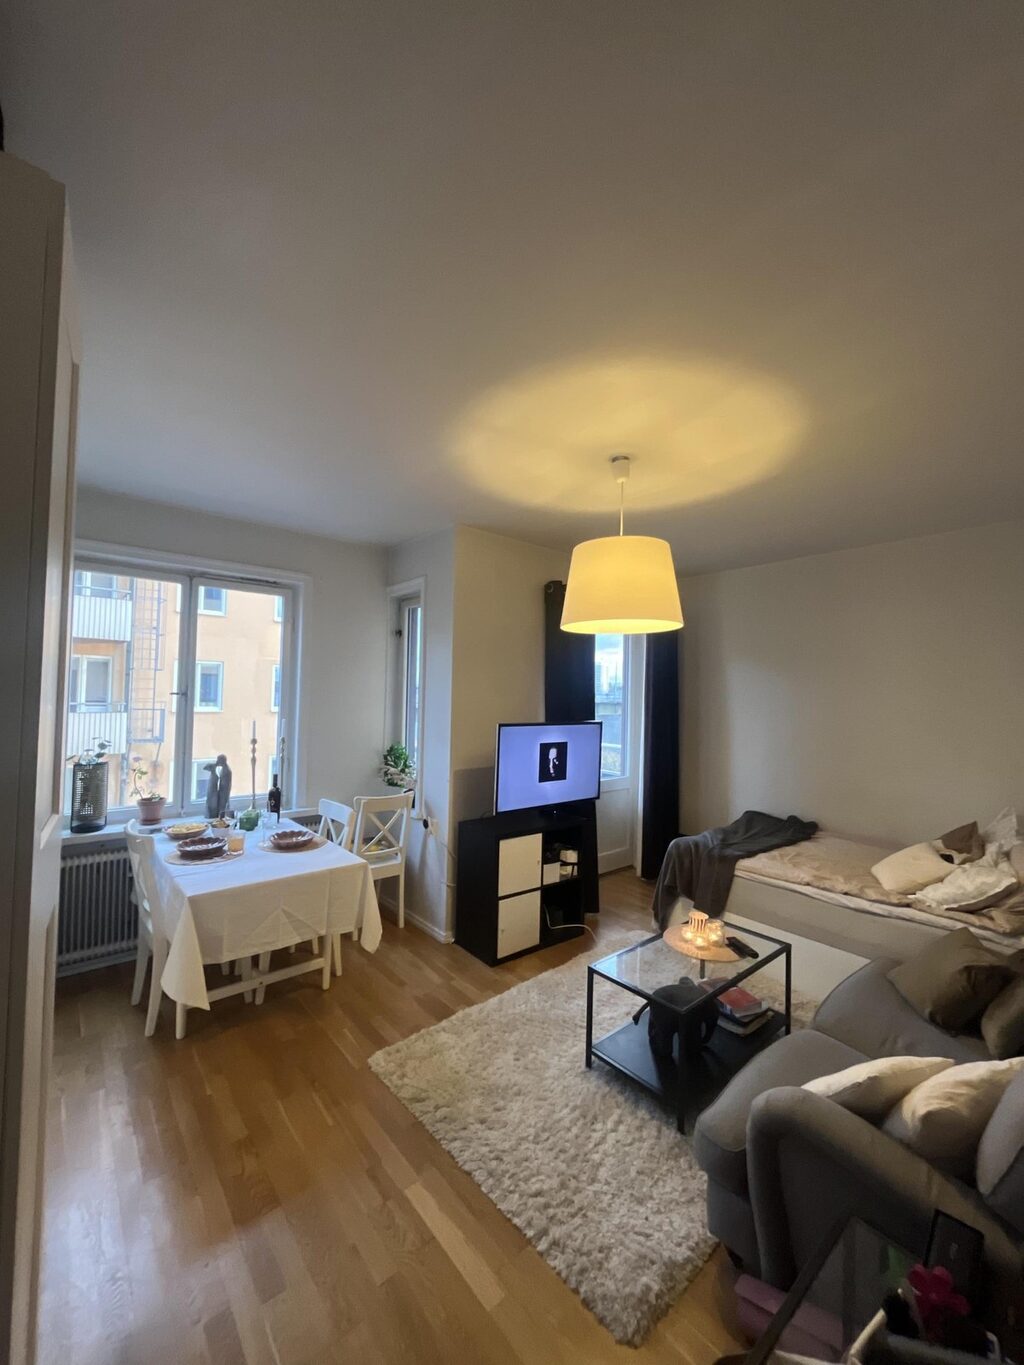 Lägenhetsbyte - Hornsgatan 153